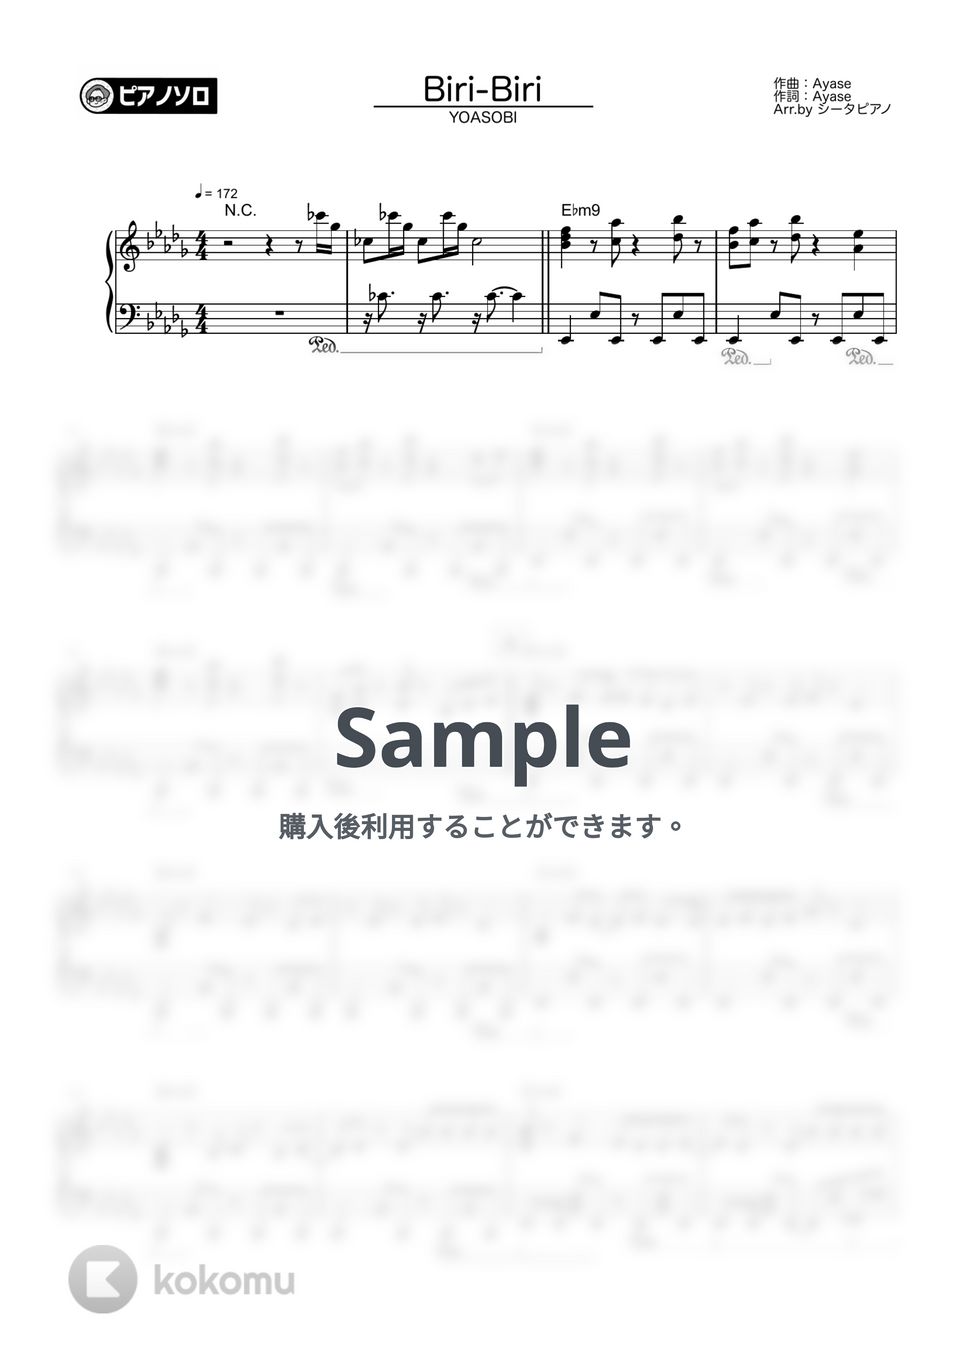 YOASOBI - Biri-Biri by シータピアノ